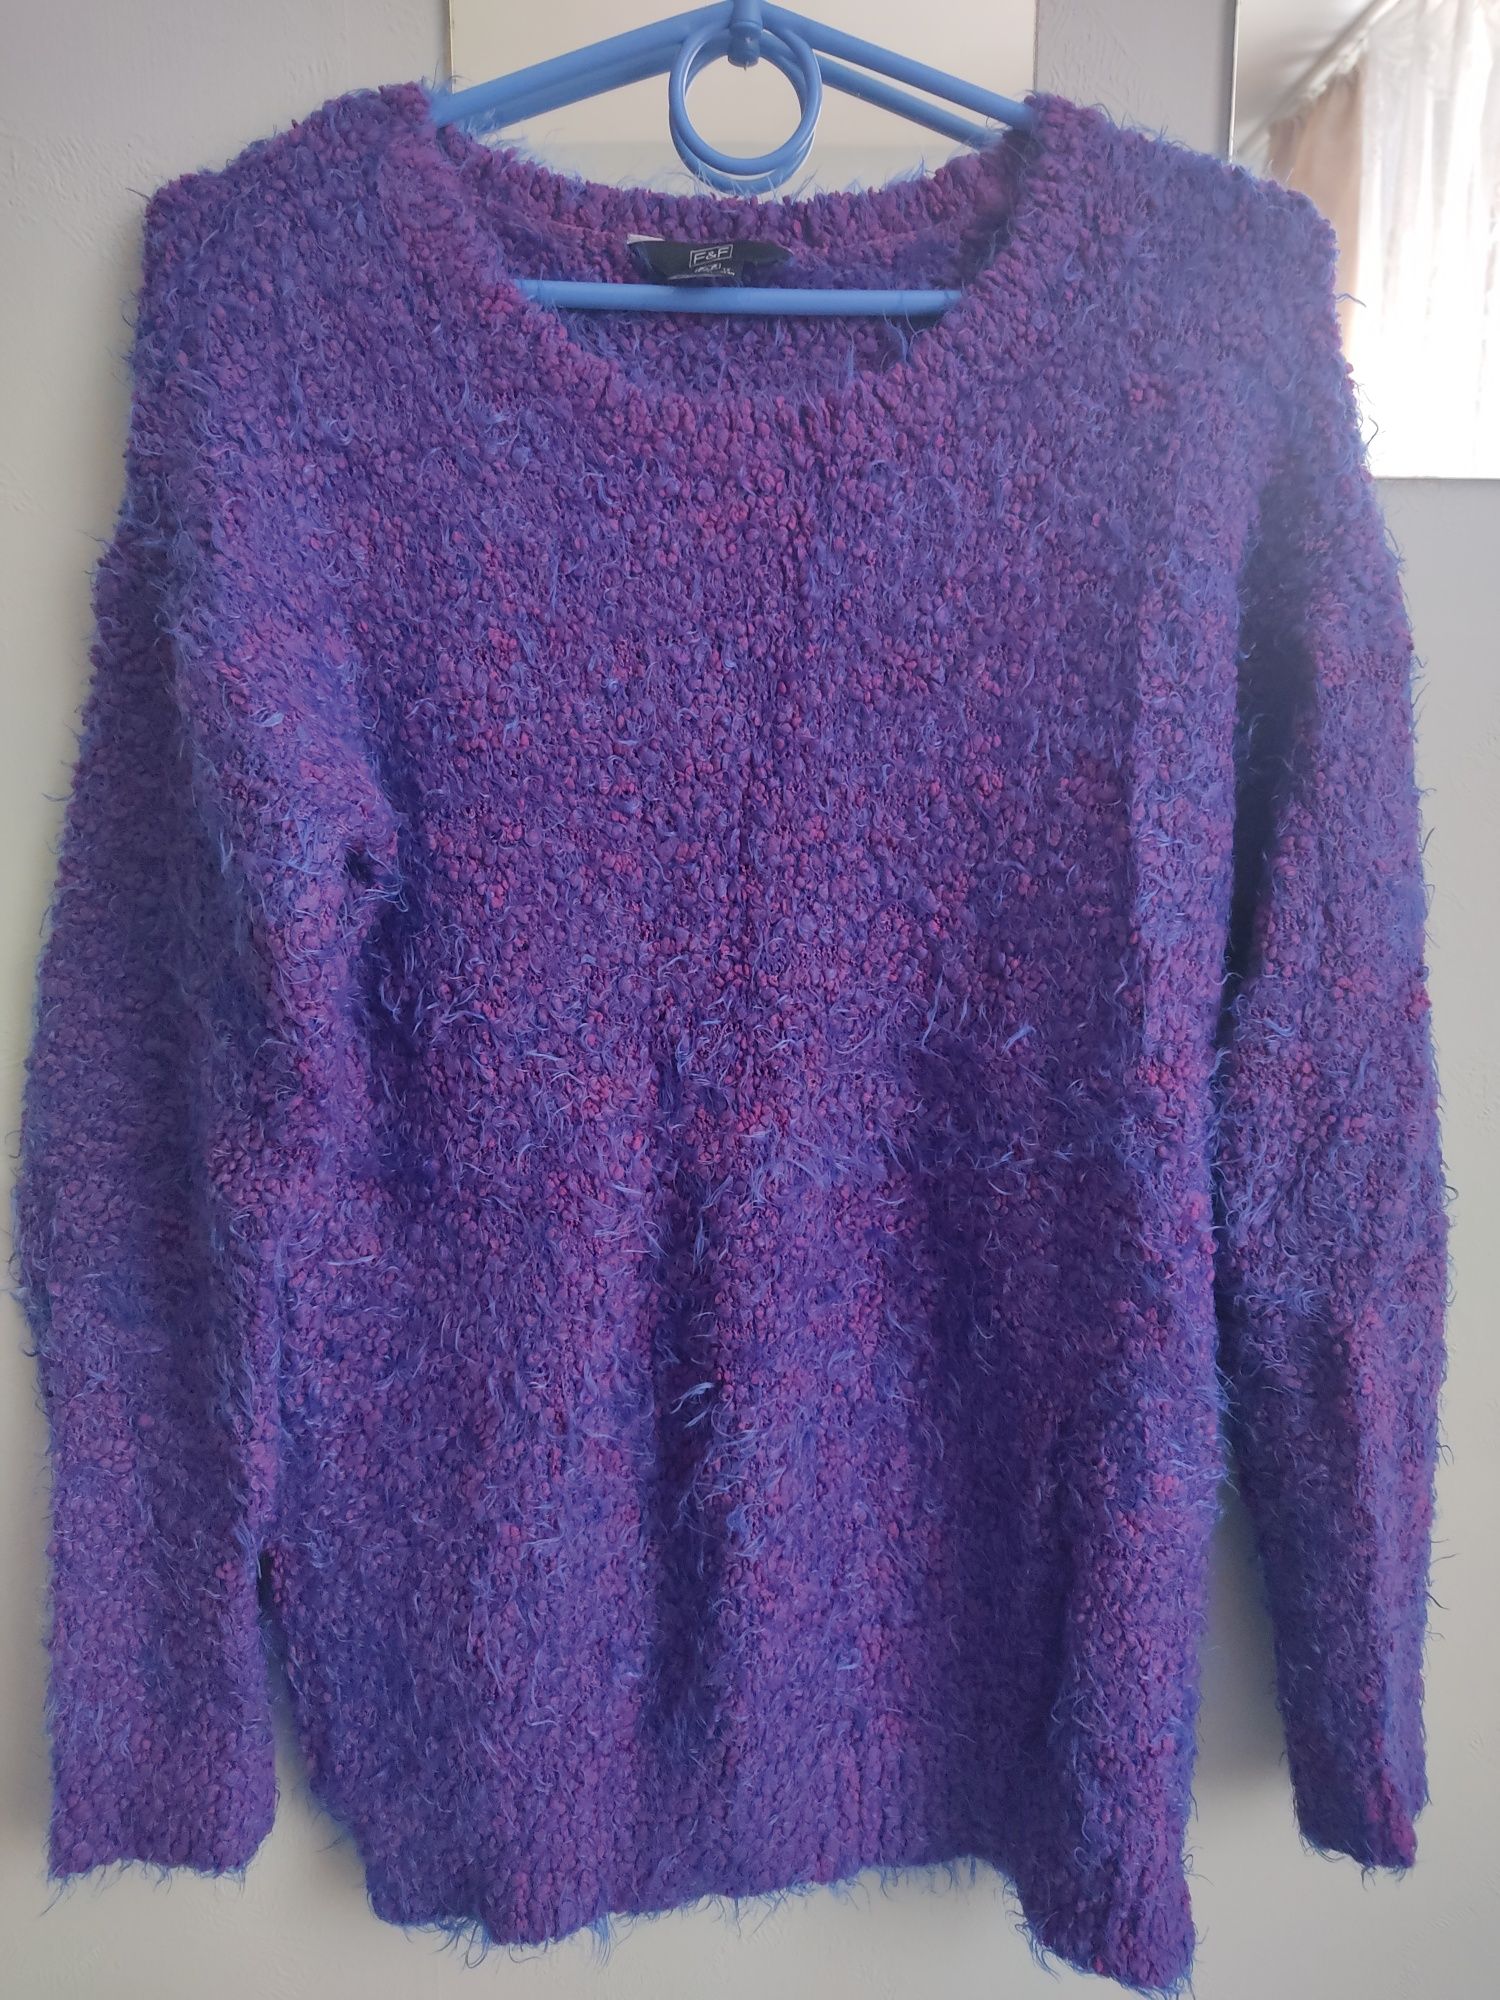 Sweterek w bardzo ciekawym kolorze